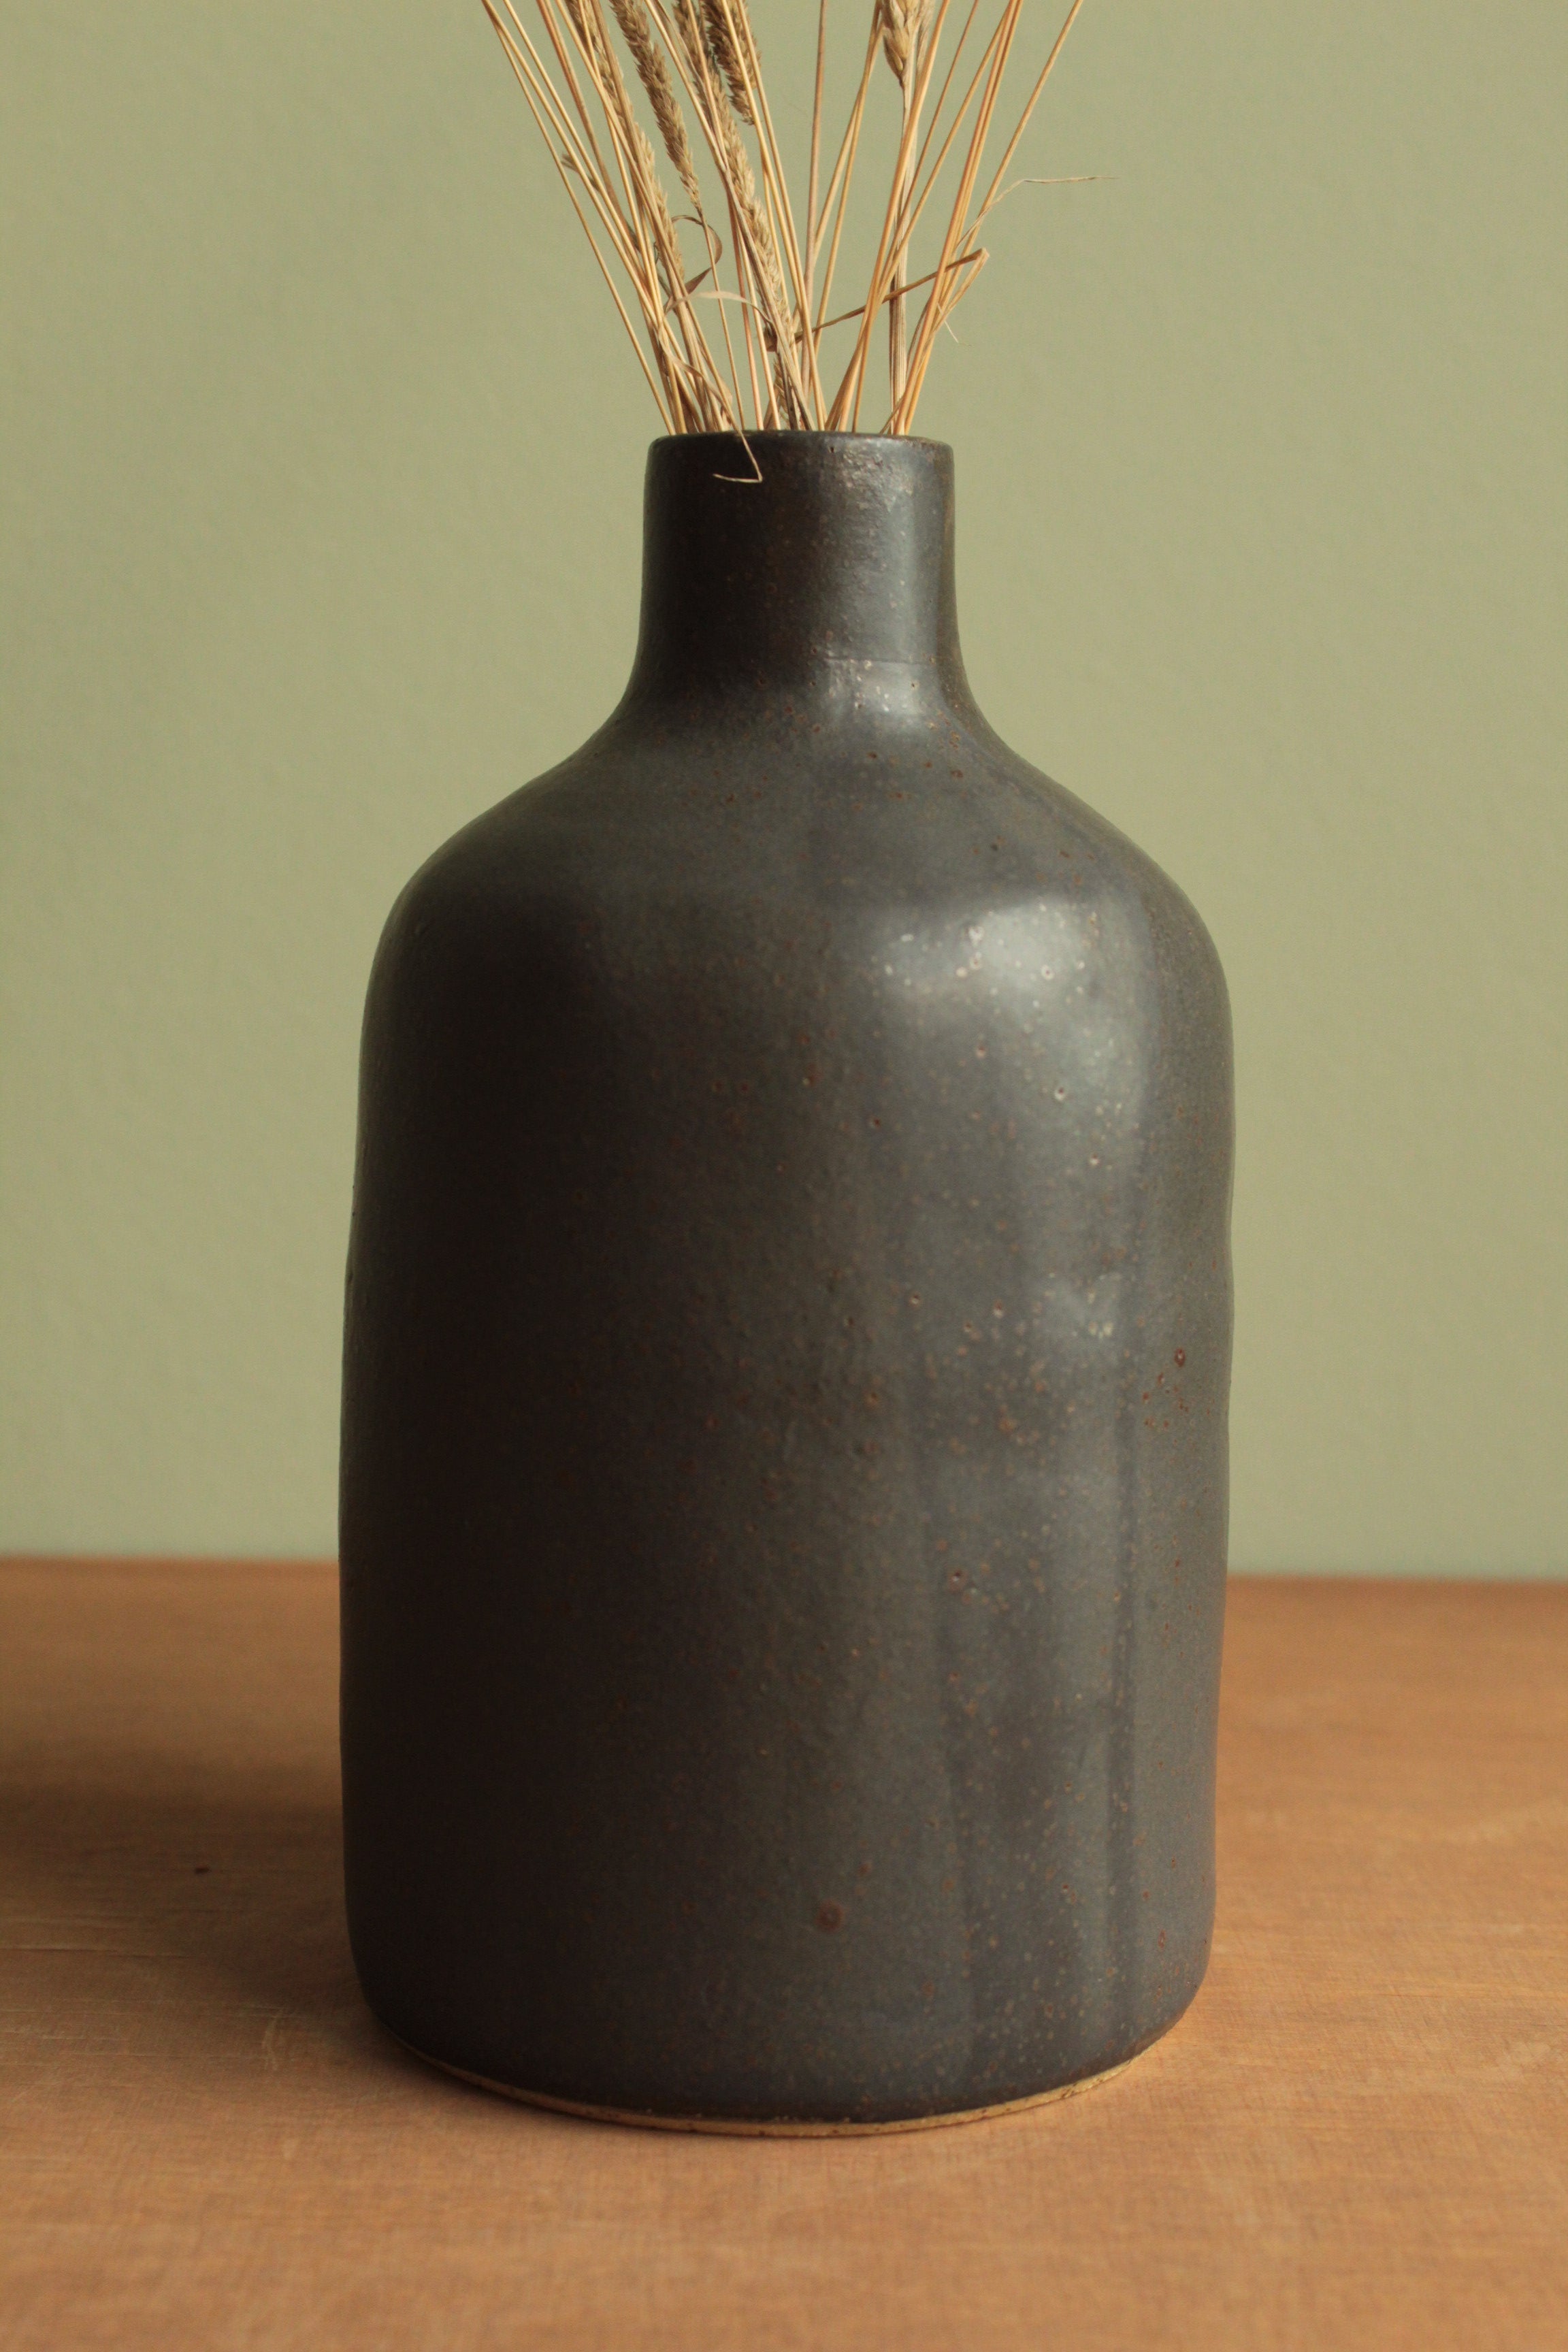 Black bottle or vase